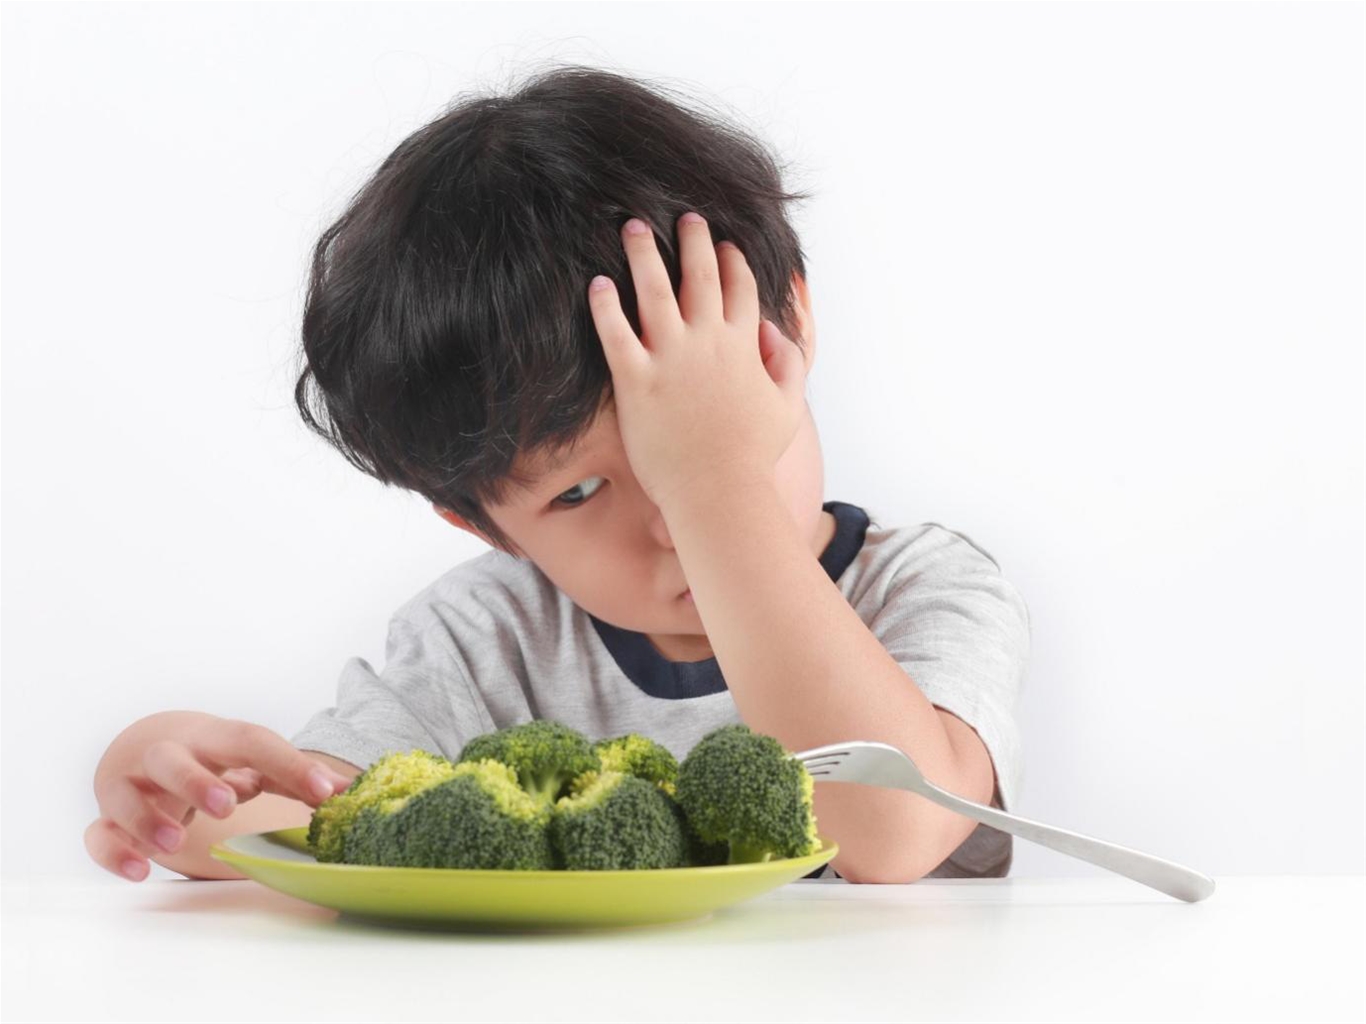 Giải pháp bổ sung chất xơ cho bé khi bé ghét ăn rau